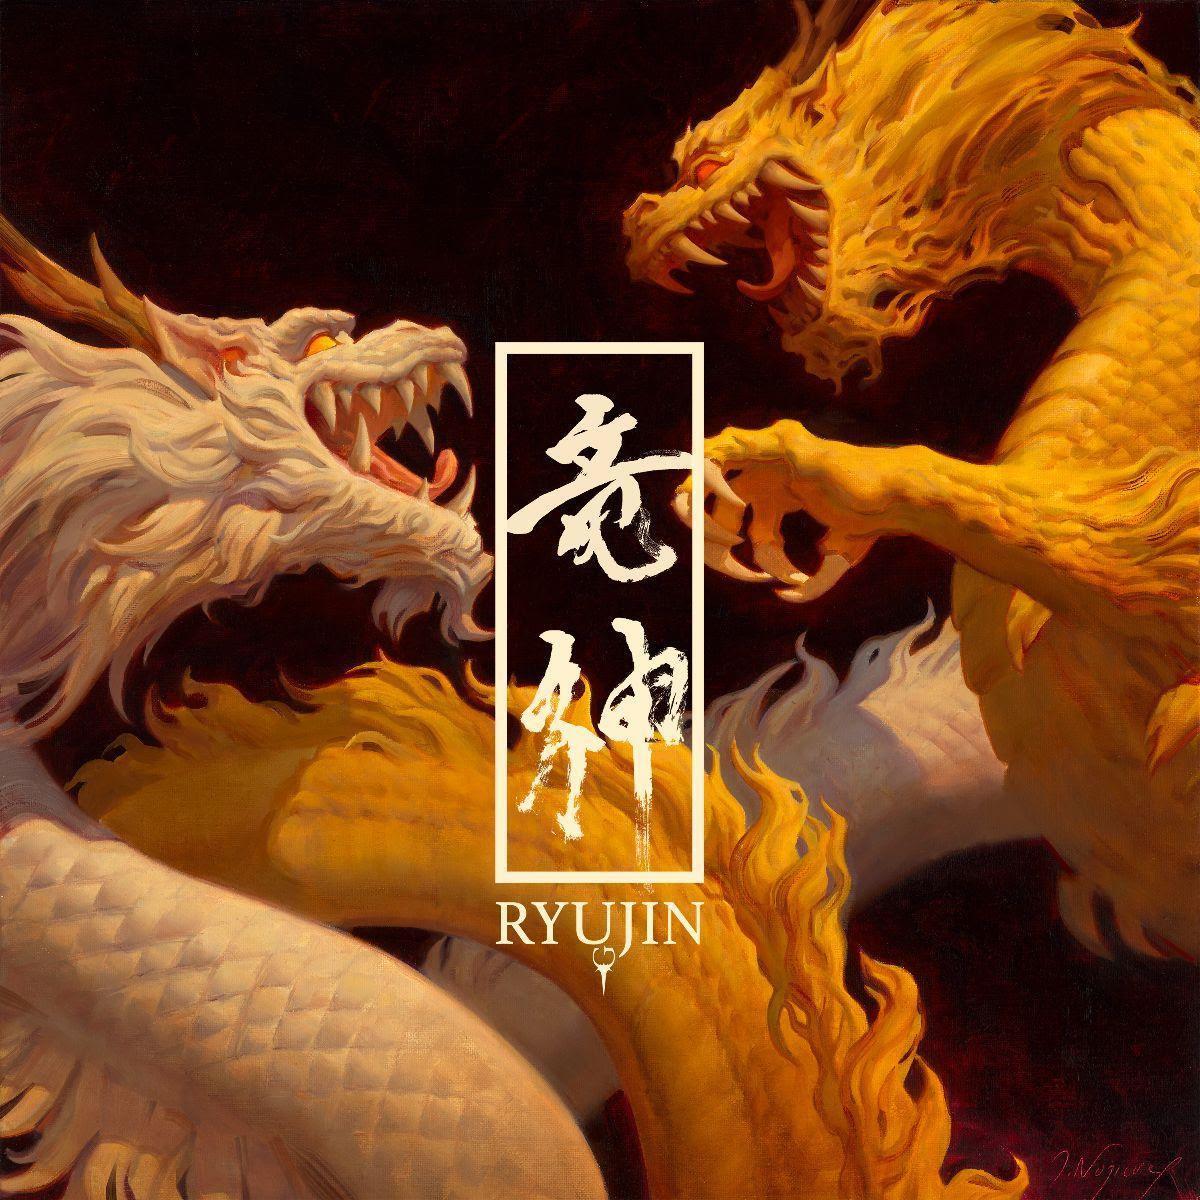 Ryujin artwork